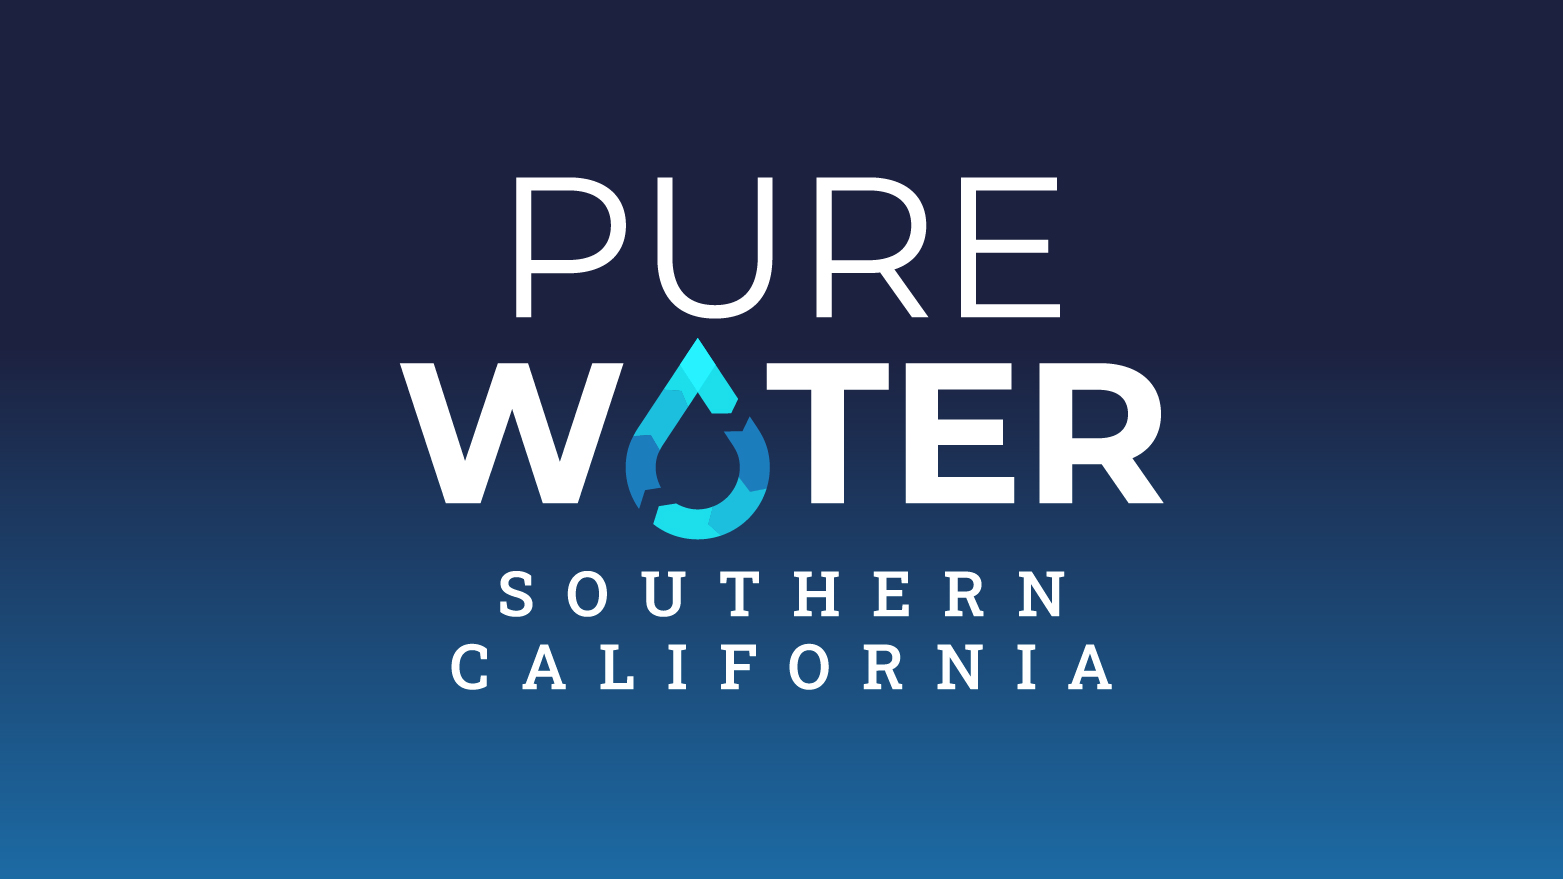 Pure Water Southern California se convierte en el nombre oficial del programa